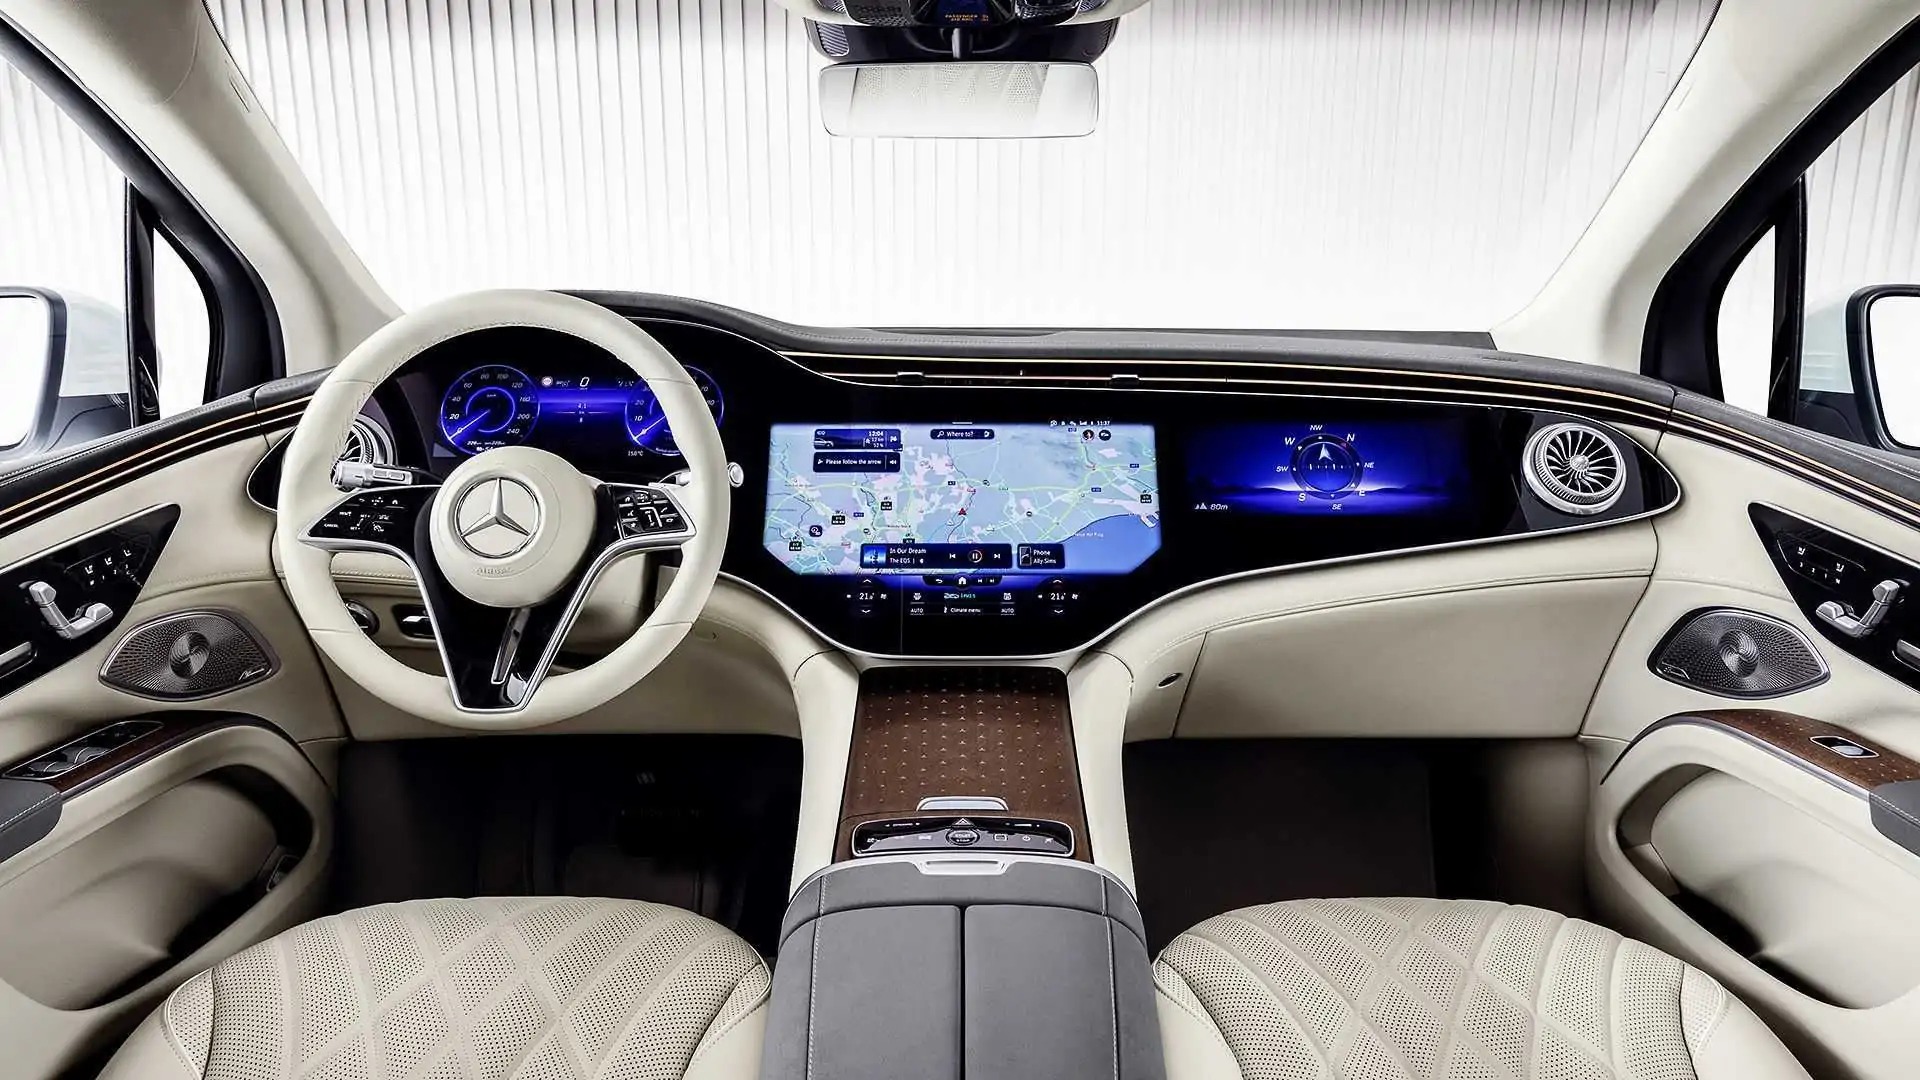 Hình ảnh ngôi sao ba cánh của Mercedes: Sự thật bí ẩn và đằng sau nó